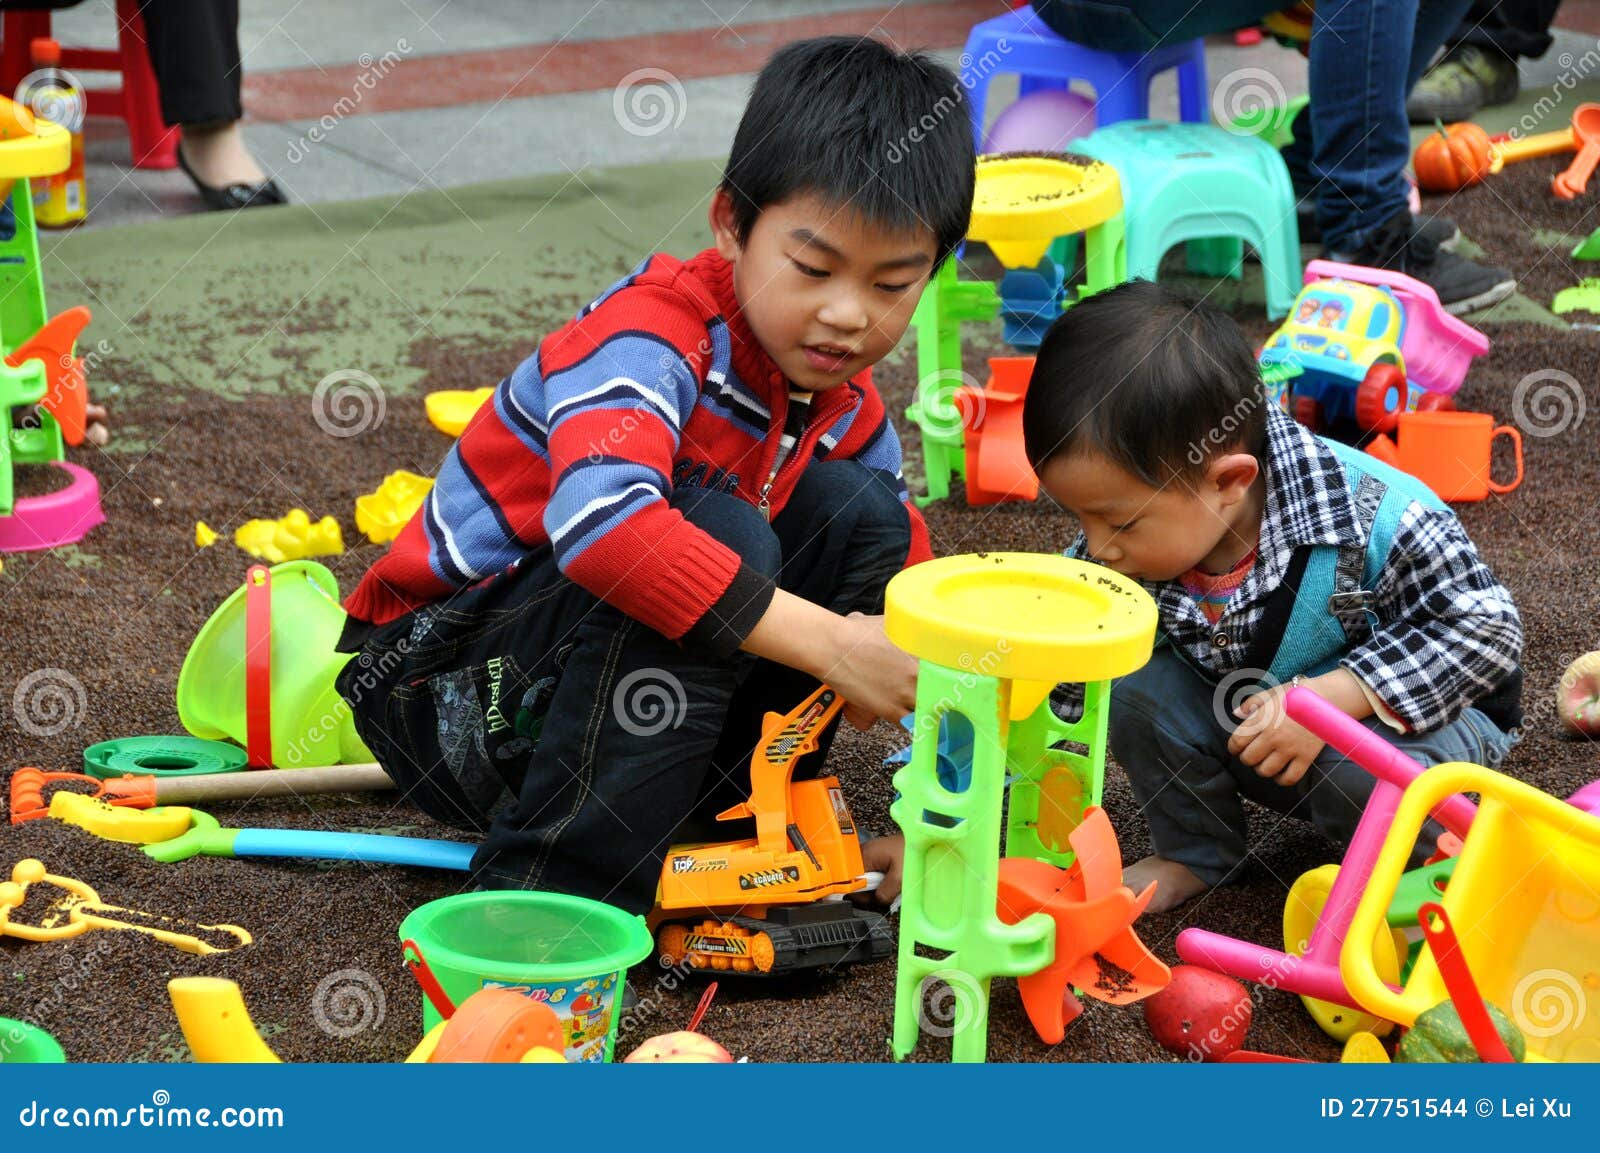 Pengzhou，中国： 作用的子项与玩具. 使用与五颜六色的塑料玩具的二个小男孩在一个大室外玩耍区域在Pengzhou的新的正方形，四川省，中国。